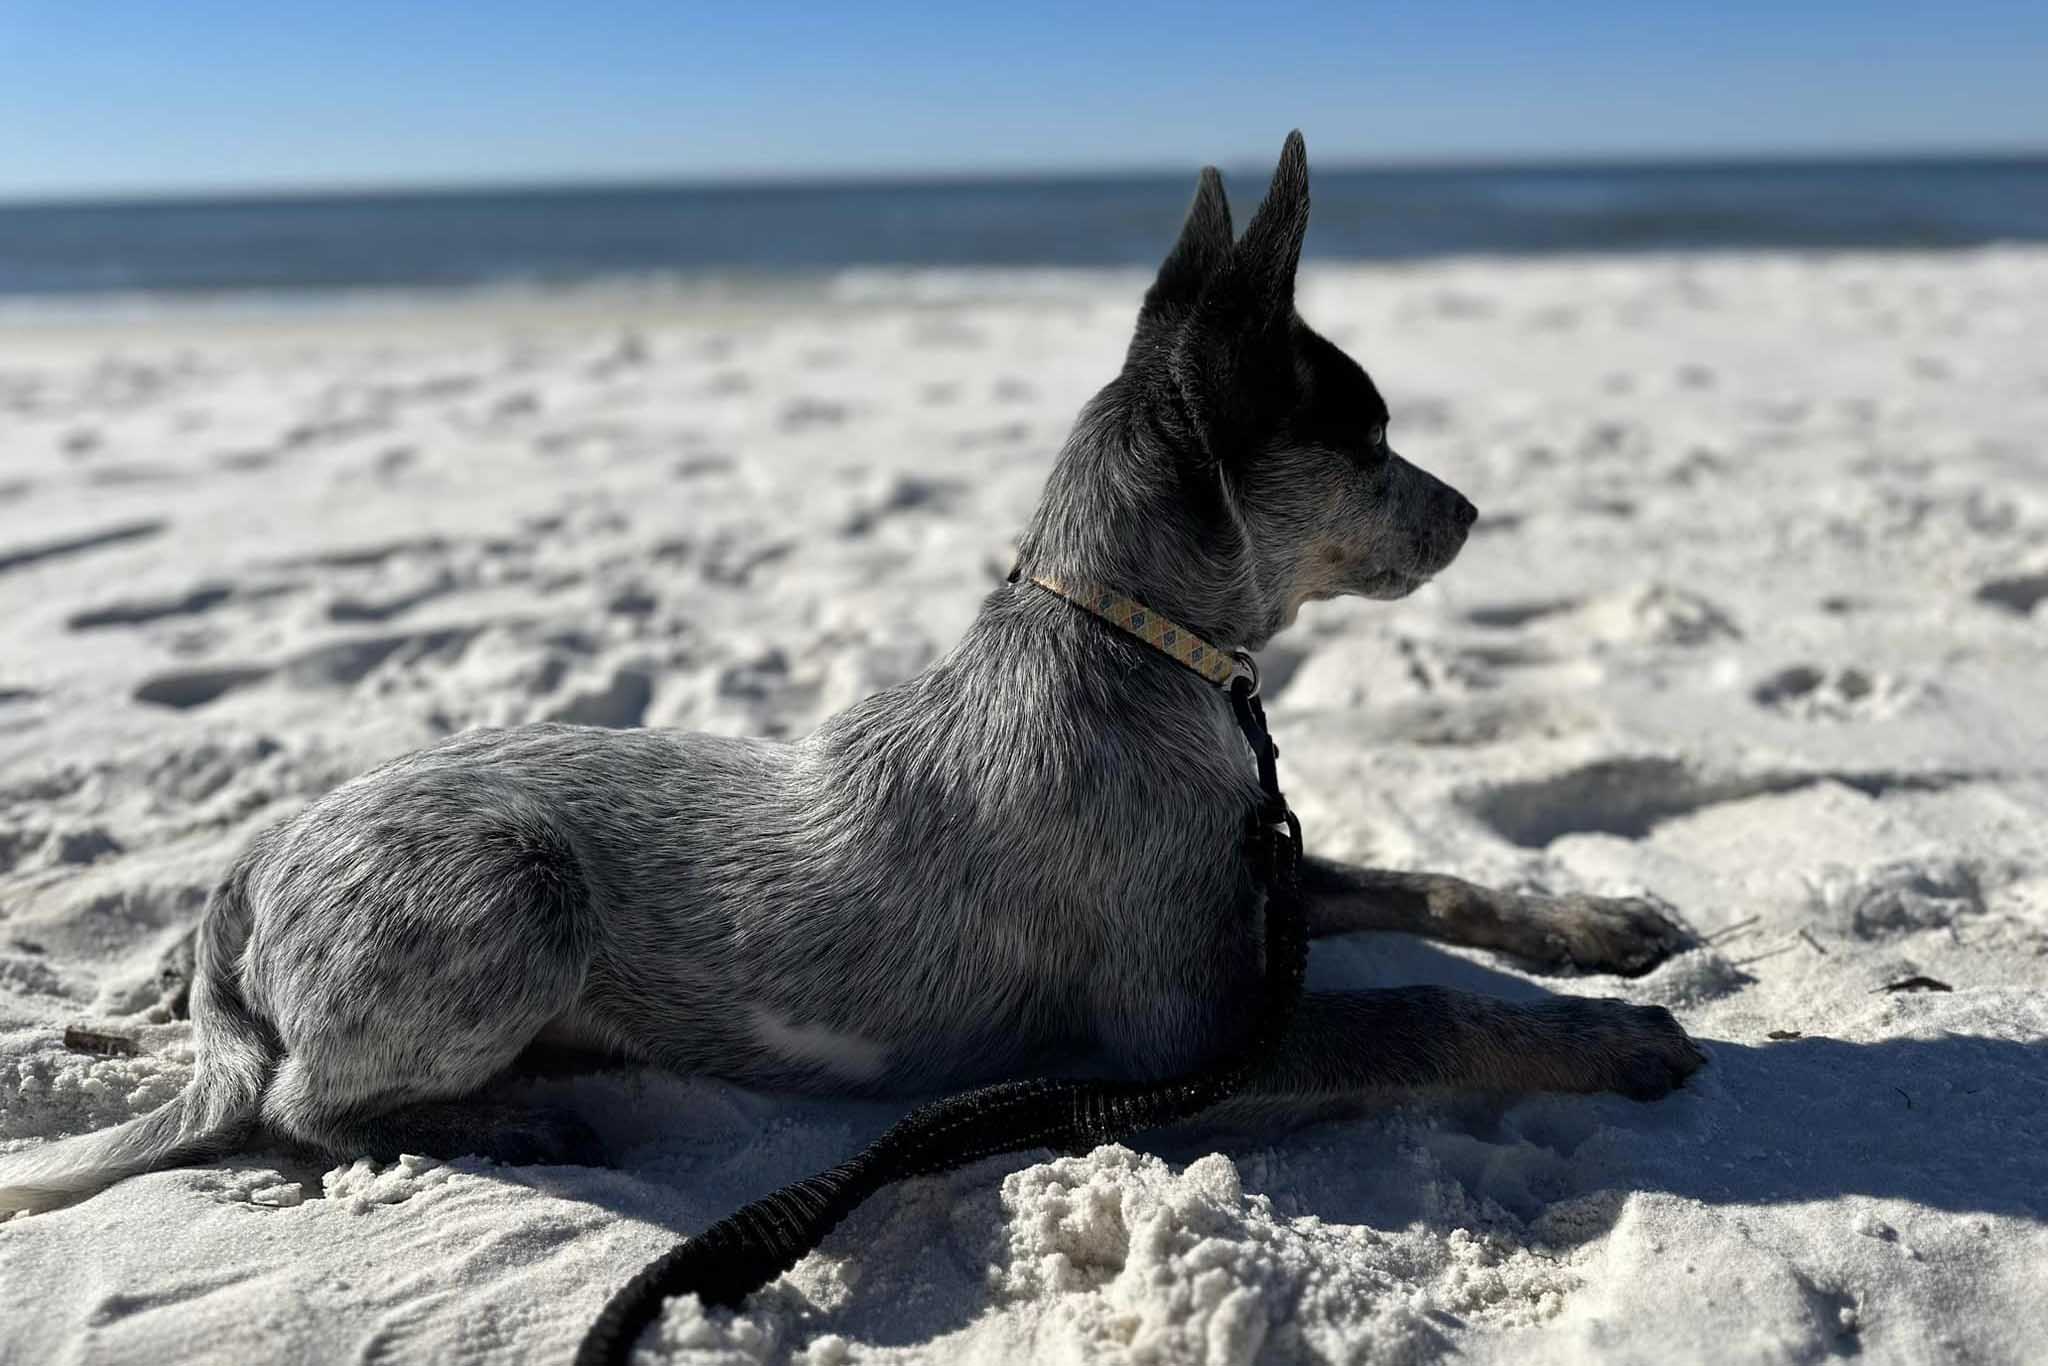 Panama City Dog Beach dog on the beach.